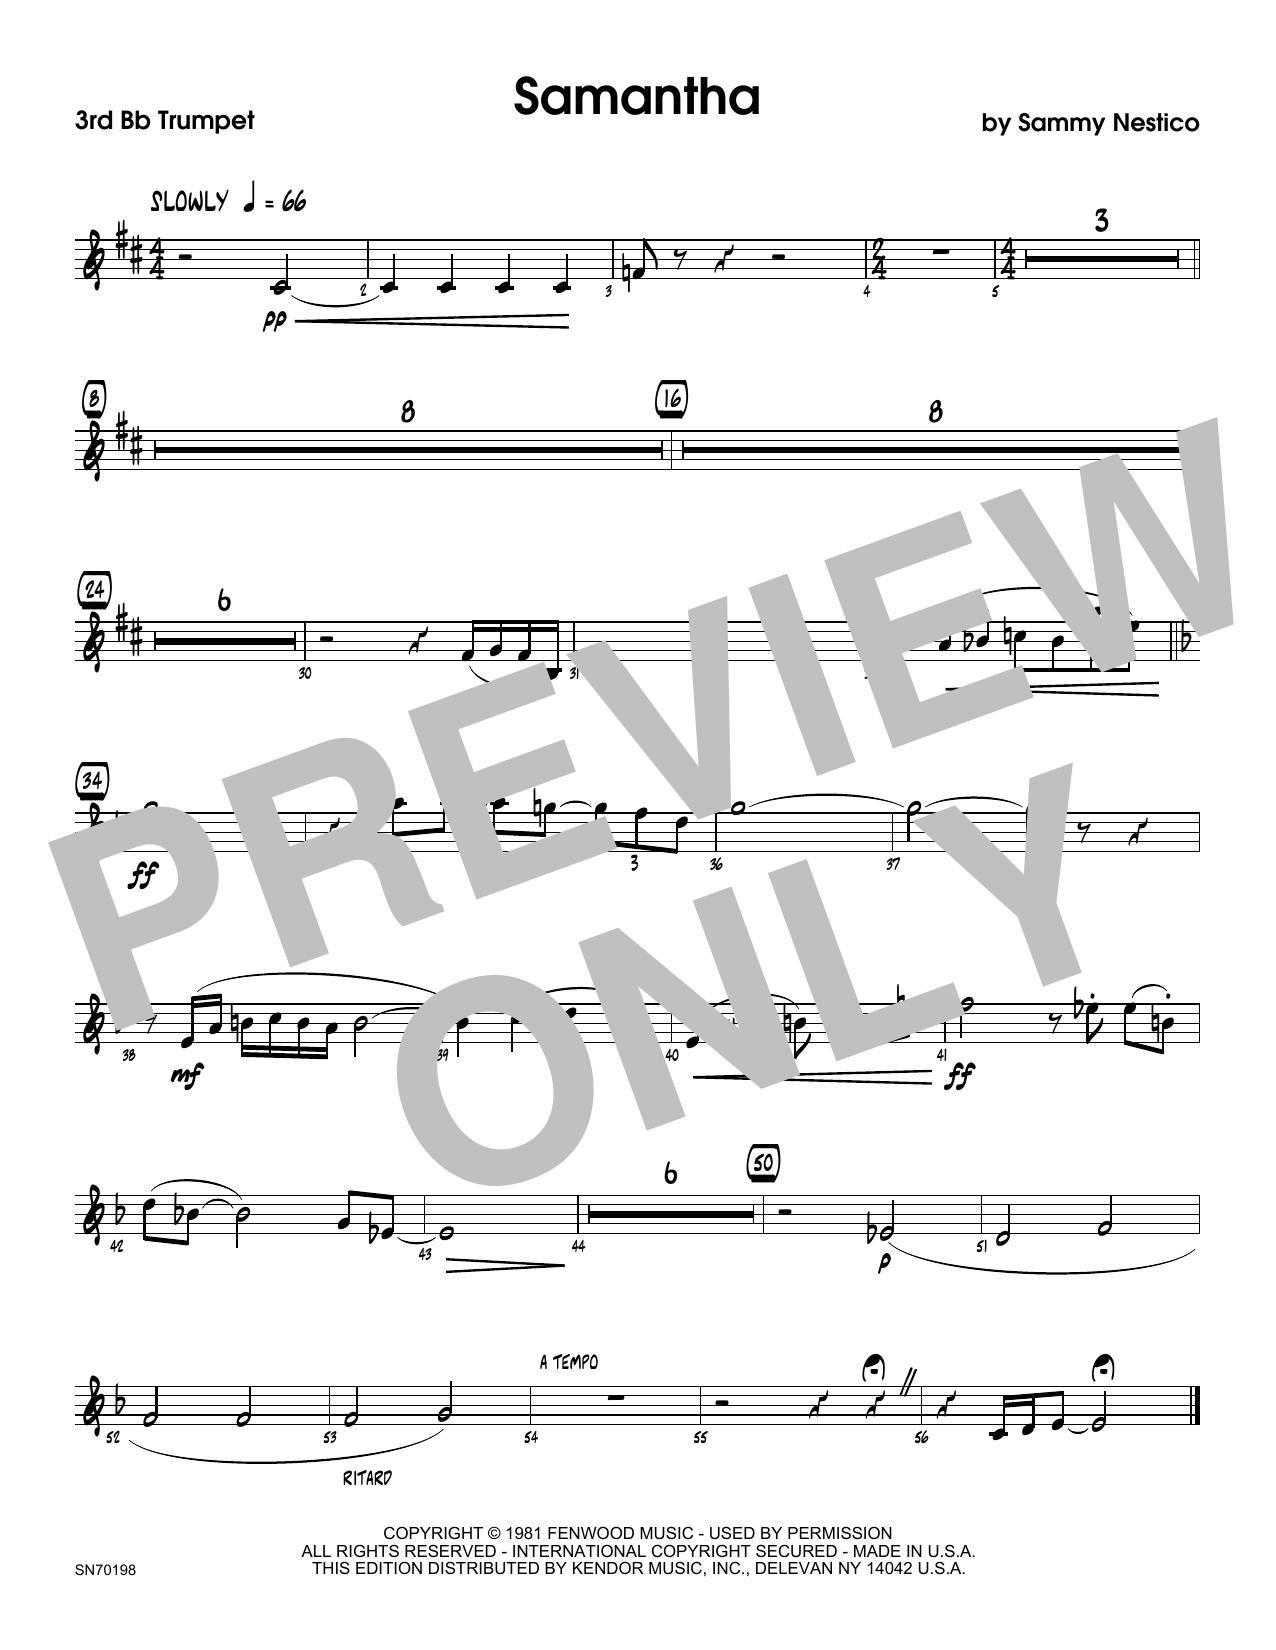 Download Sammy Nestico Samantha - 2nd Bb Trumpet Sheet Music